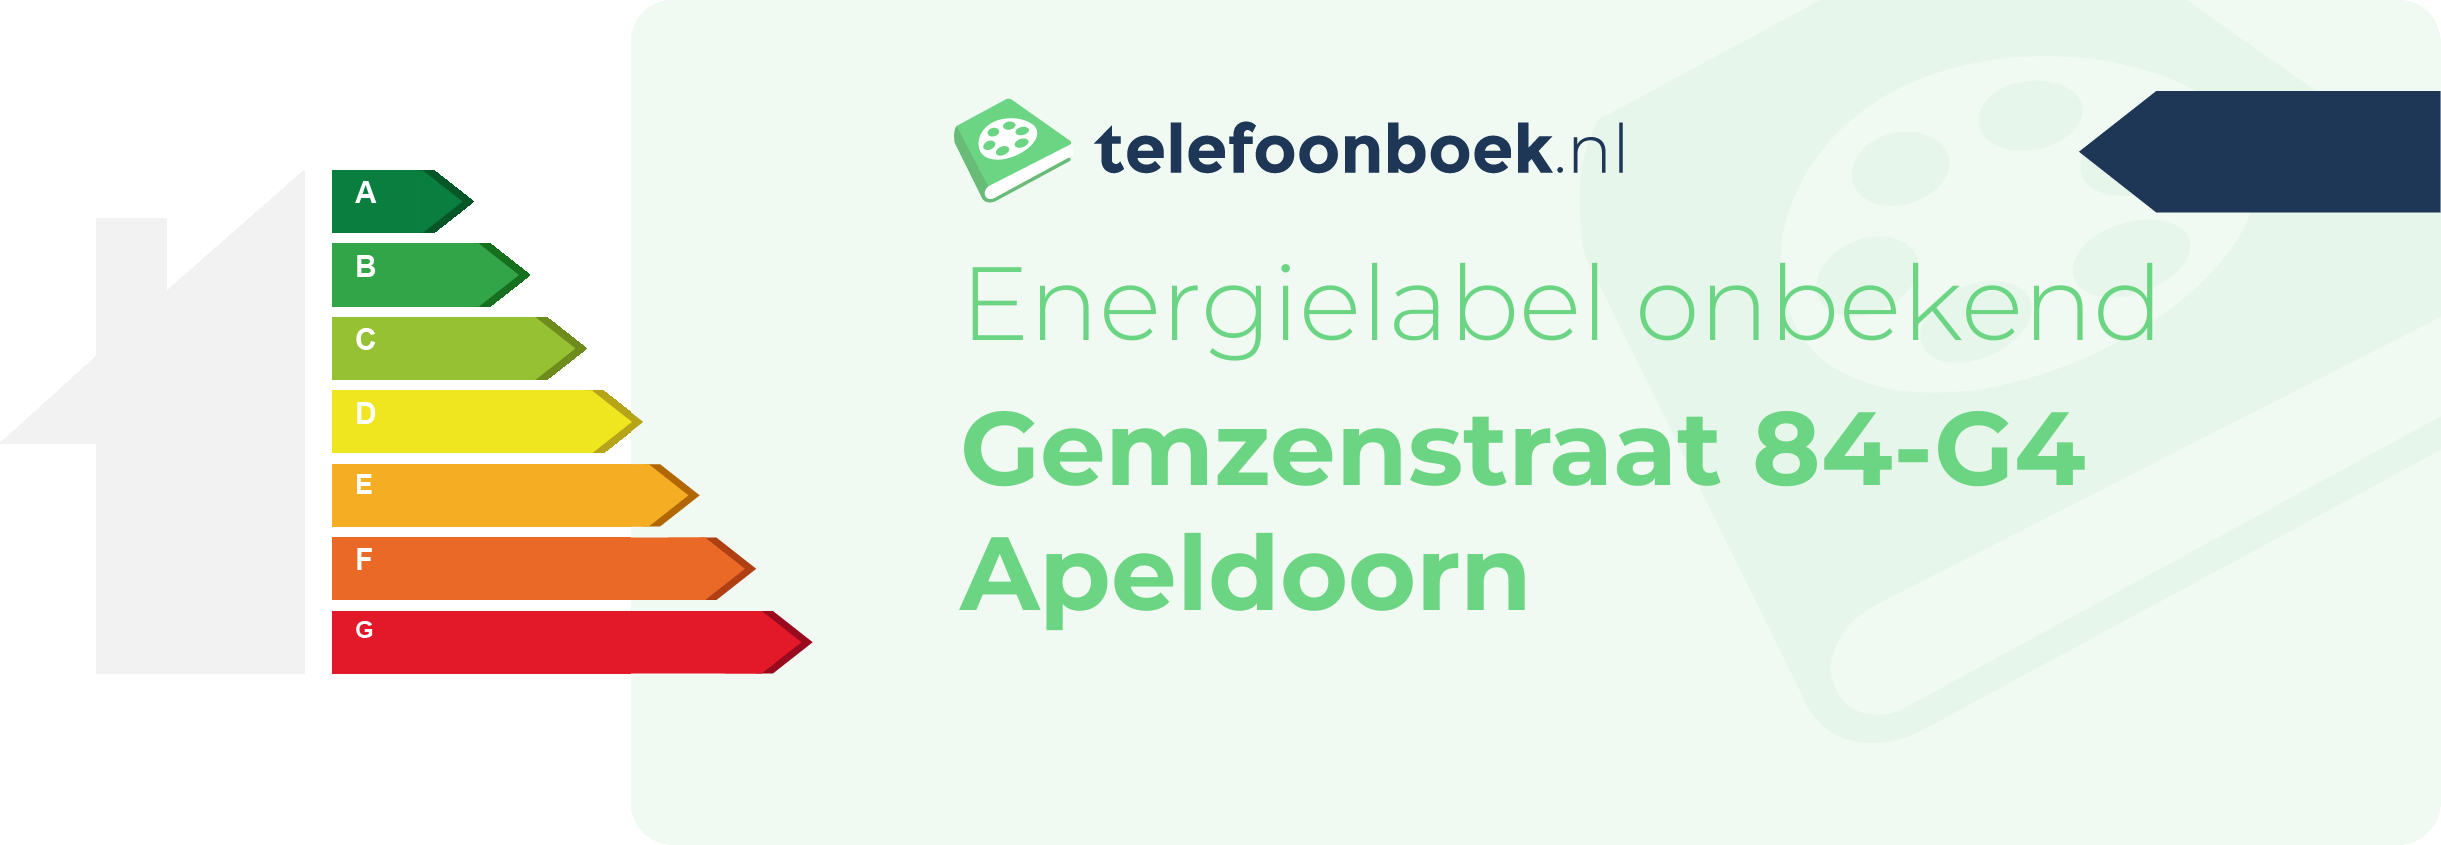 Energielabel Gemzenstraat 84-G4 Apeldoorn